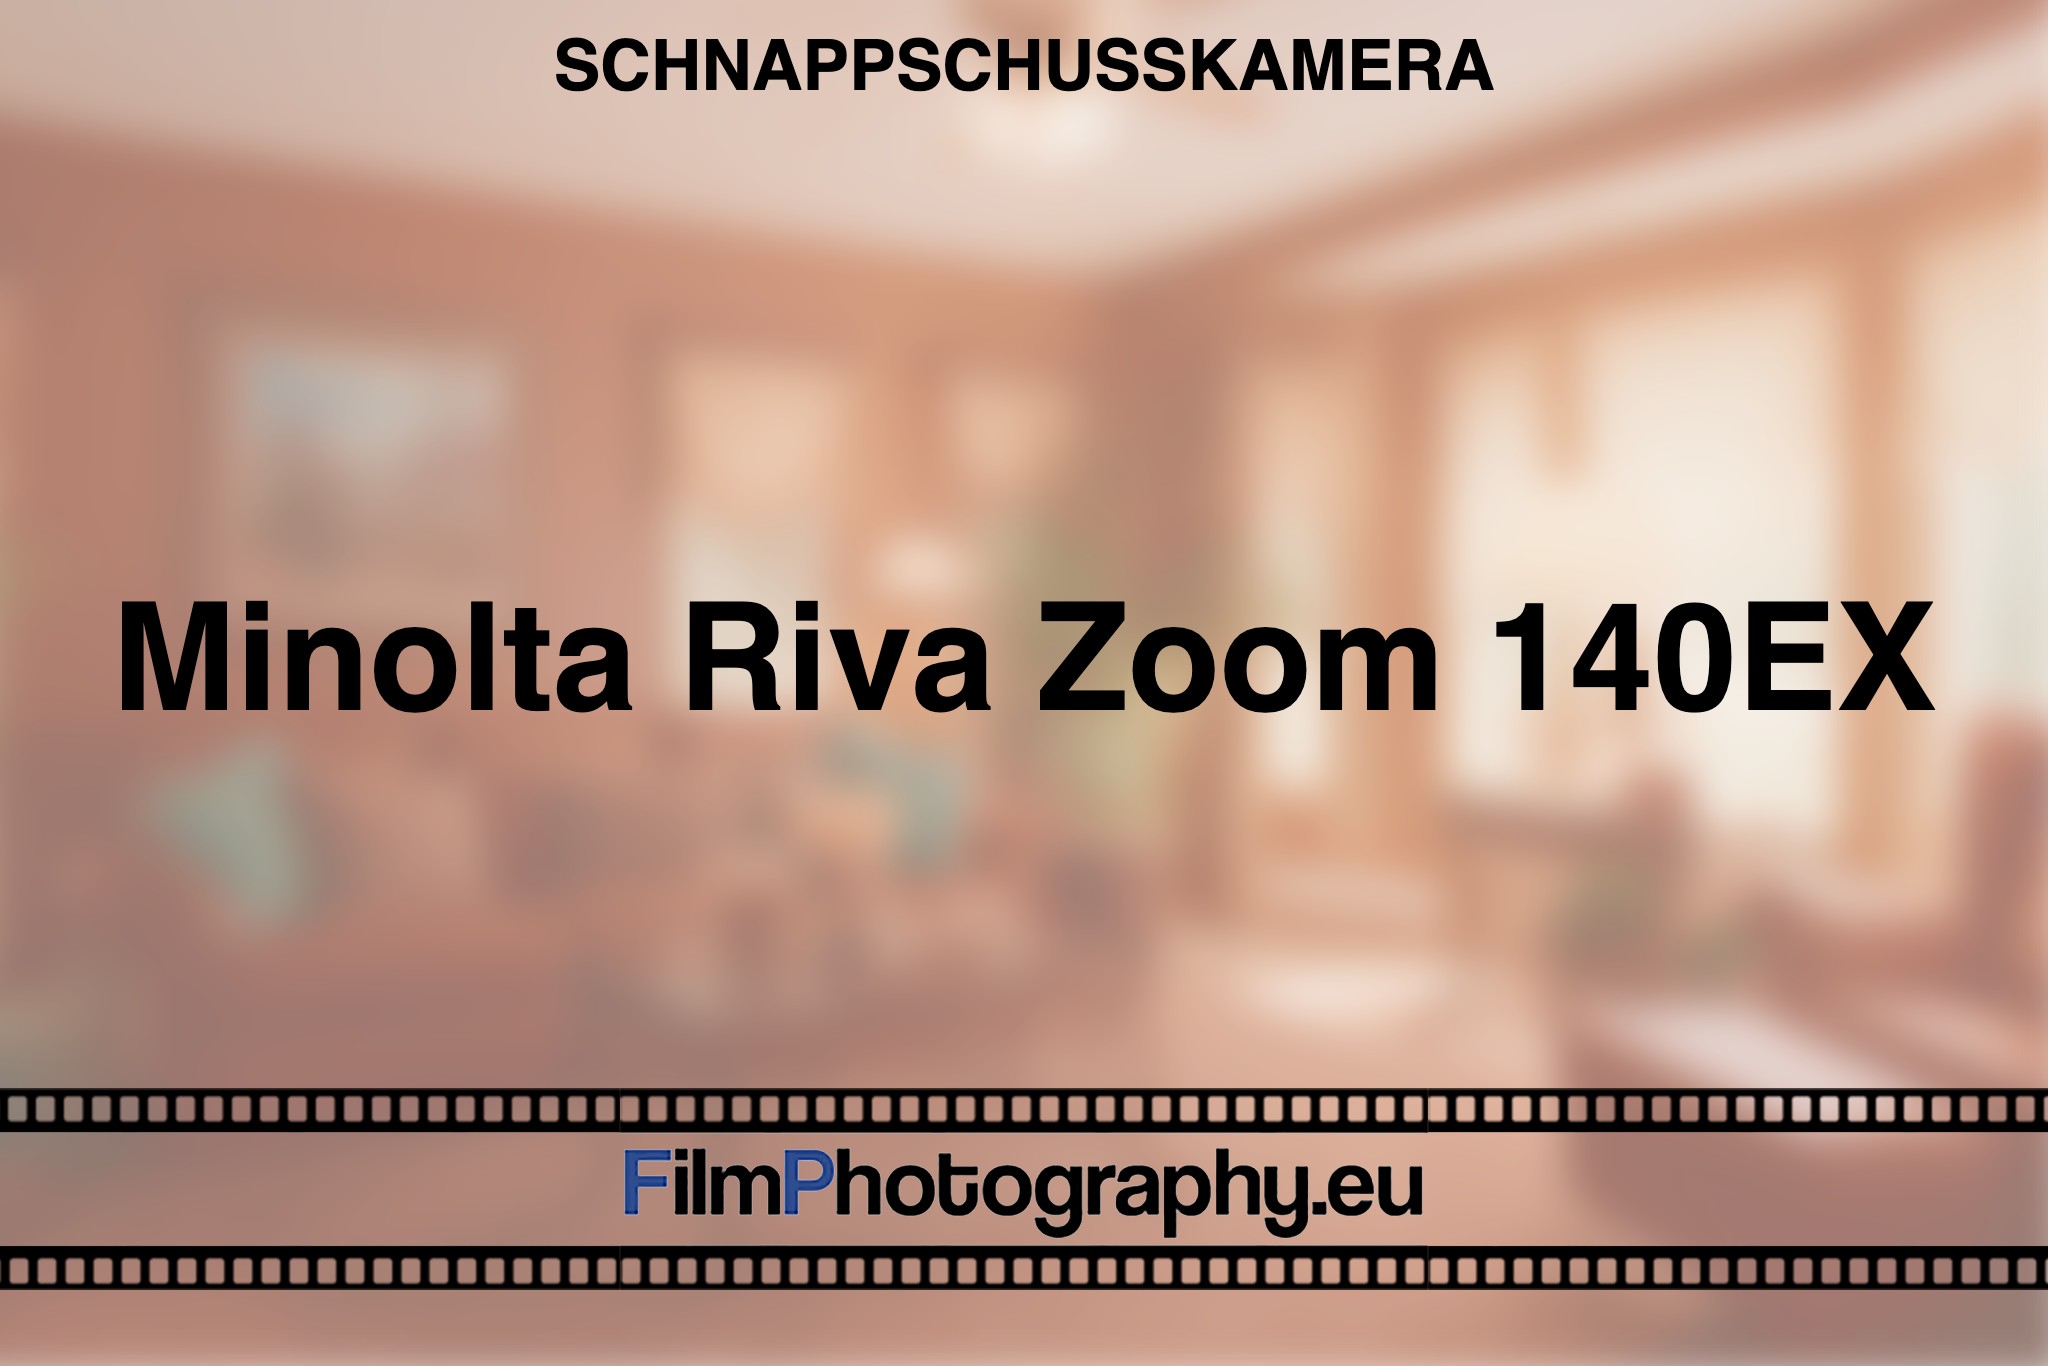 minolta-riva-zoom-140ex-schnappschusskamera-bnv